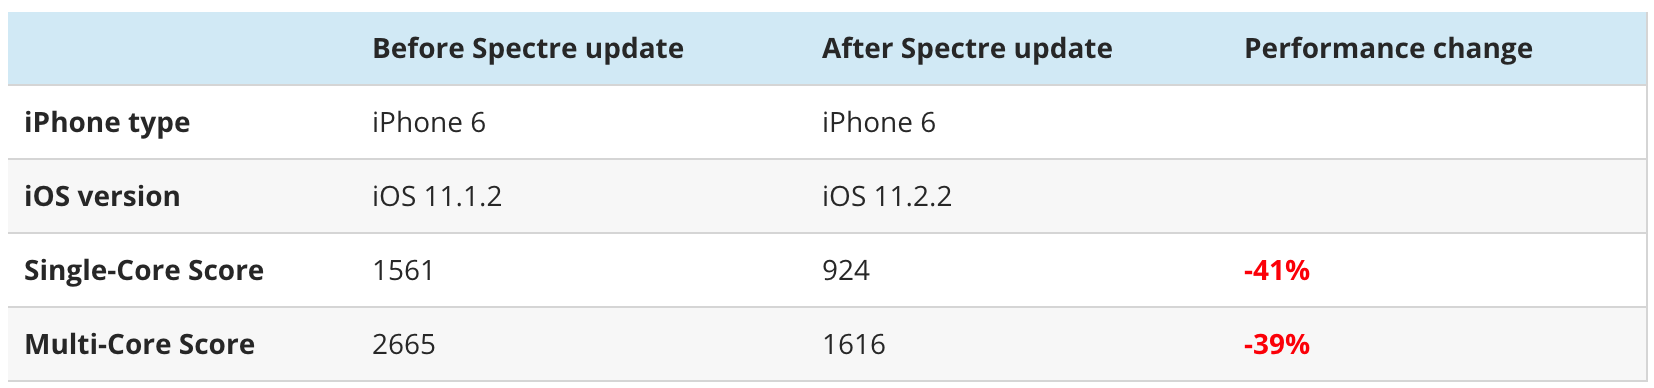 Патч для защиты от Spectre снижает производительность iPhone 6 до 50% 1